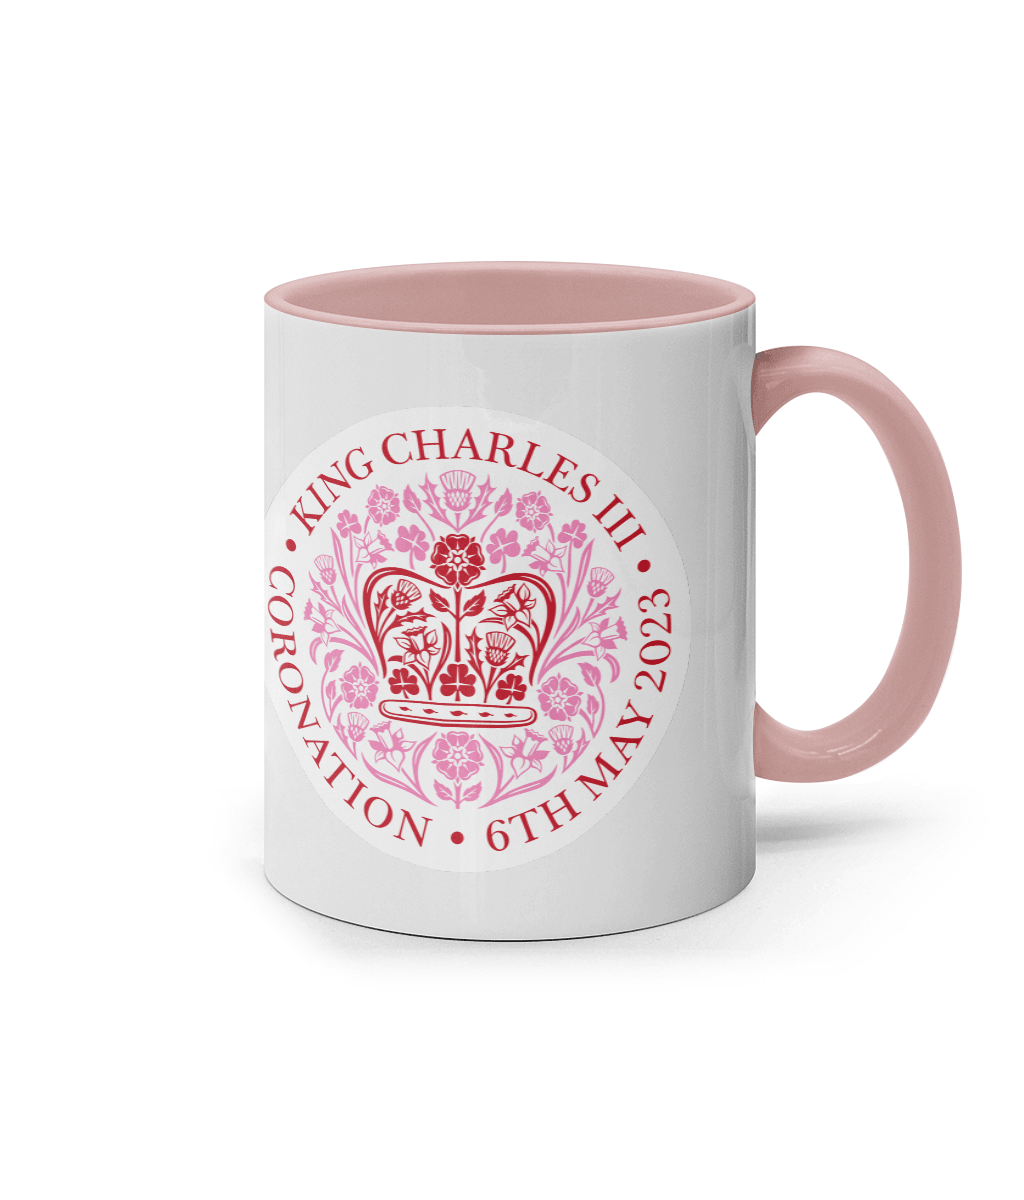 King Charles III Coronation 2023 11oz pink emblem mug. Coronation celebration mug - DuvetDay.co.uk